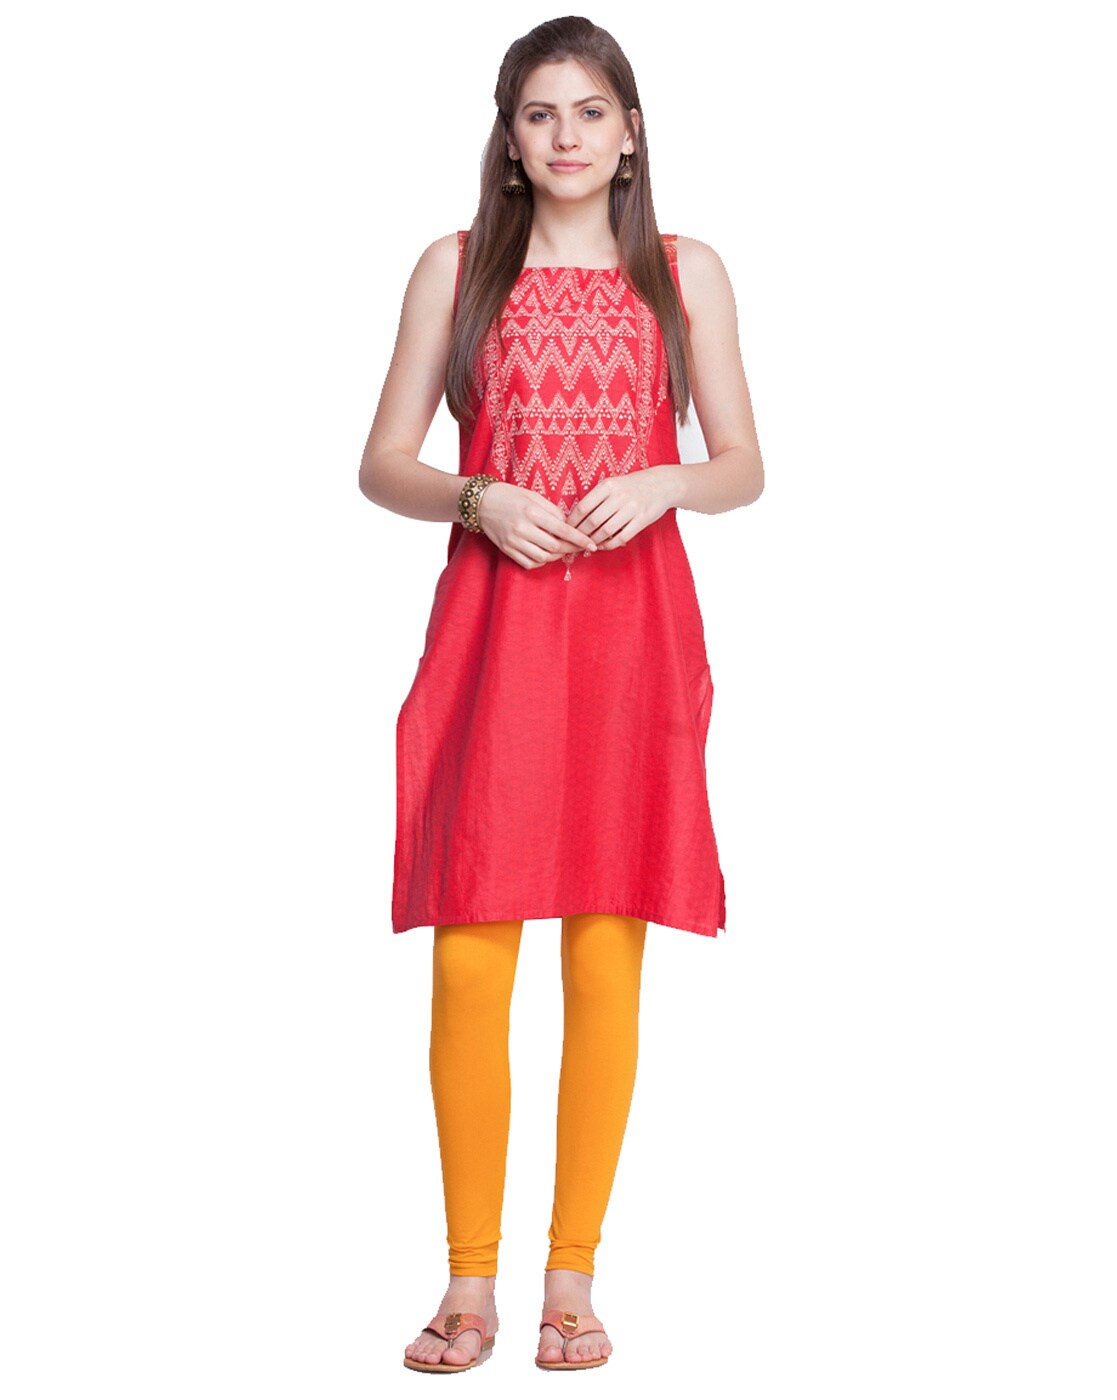 Buy Dollar Missy Multicolor Leggings (Pack of 3) for Women Online @ Tata  CLiQ